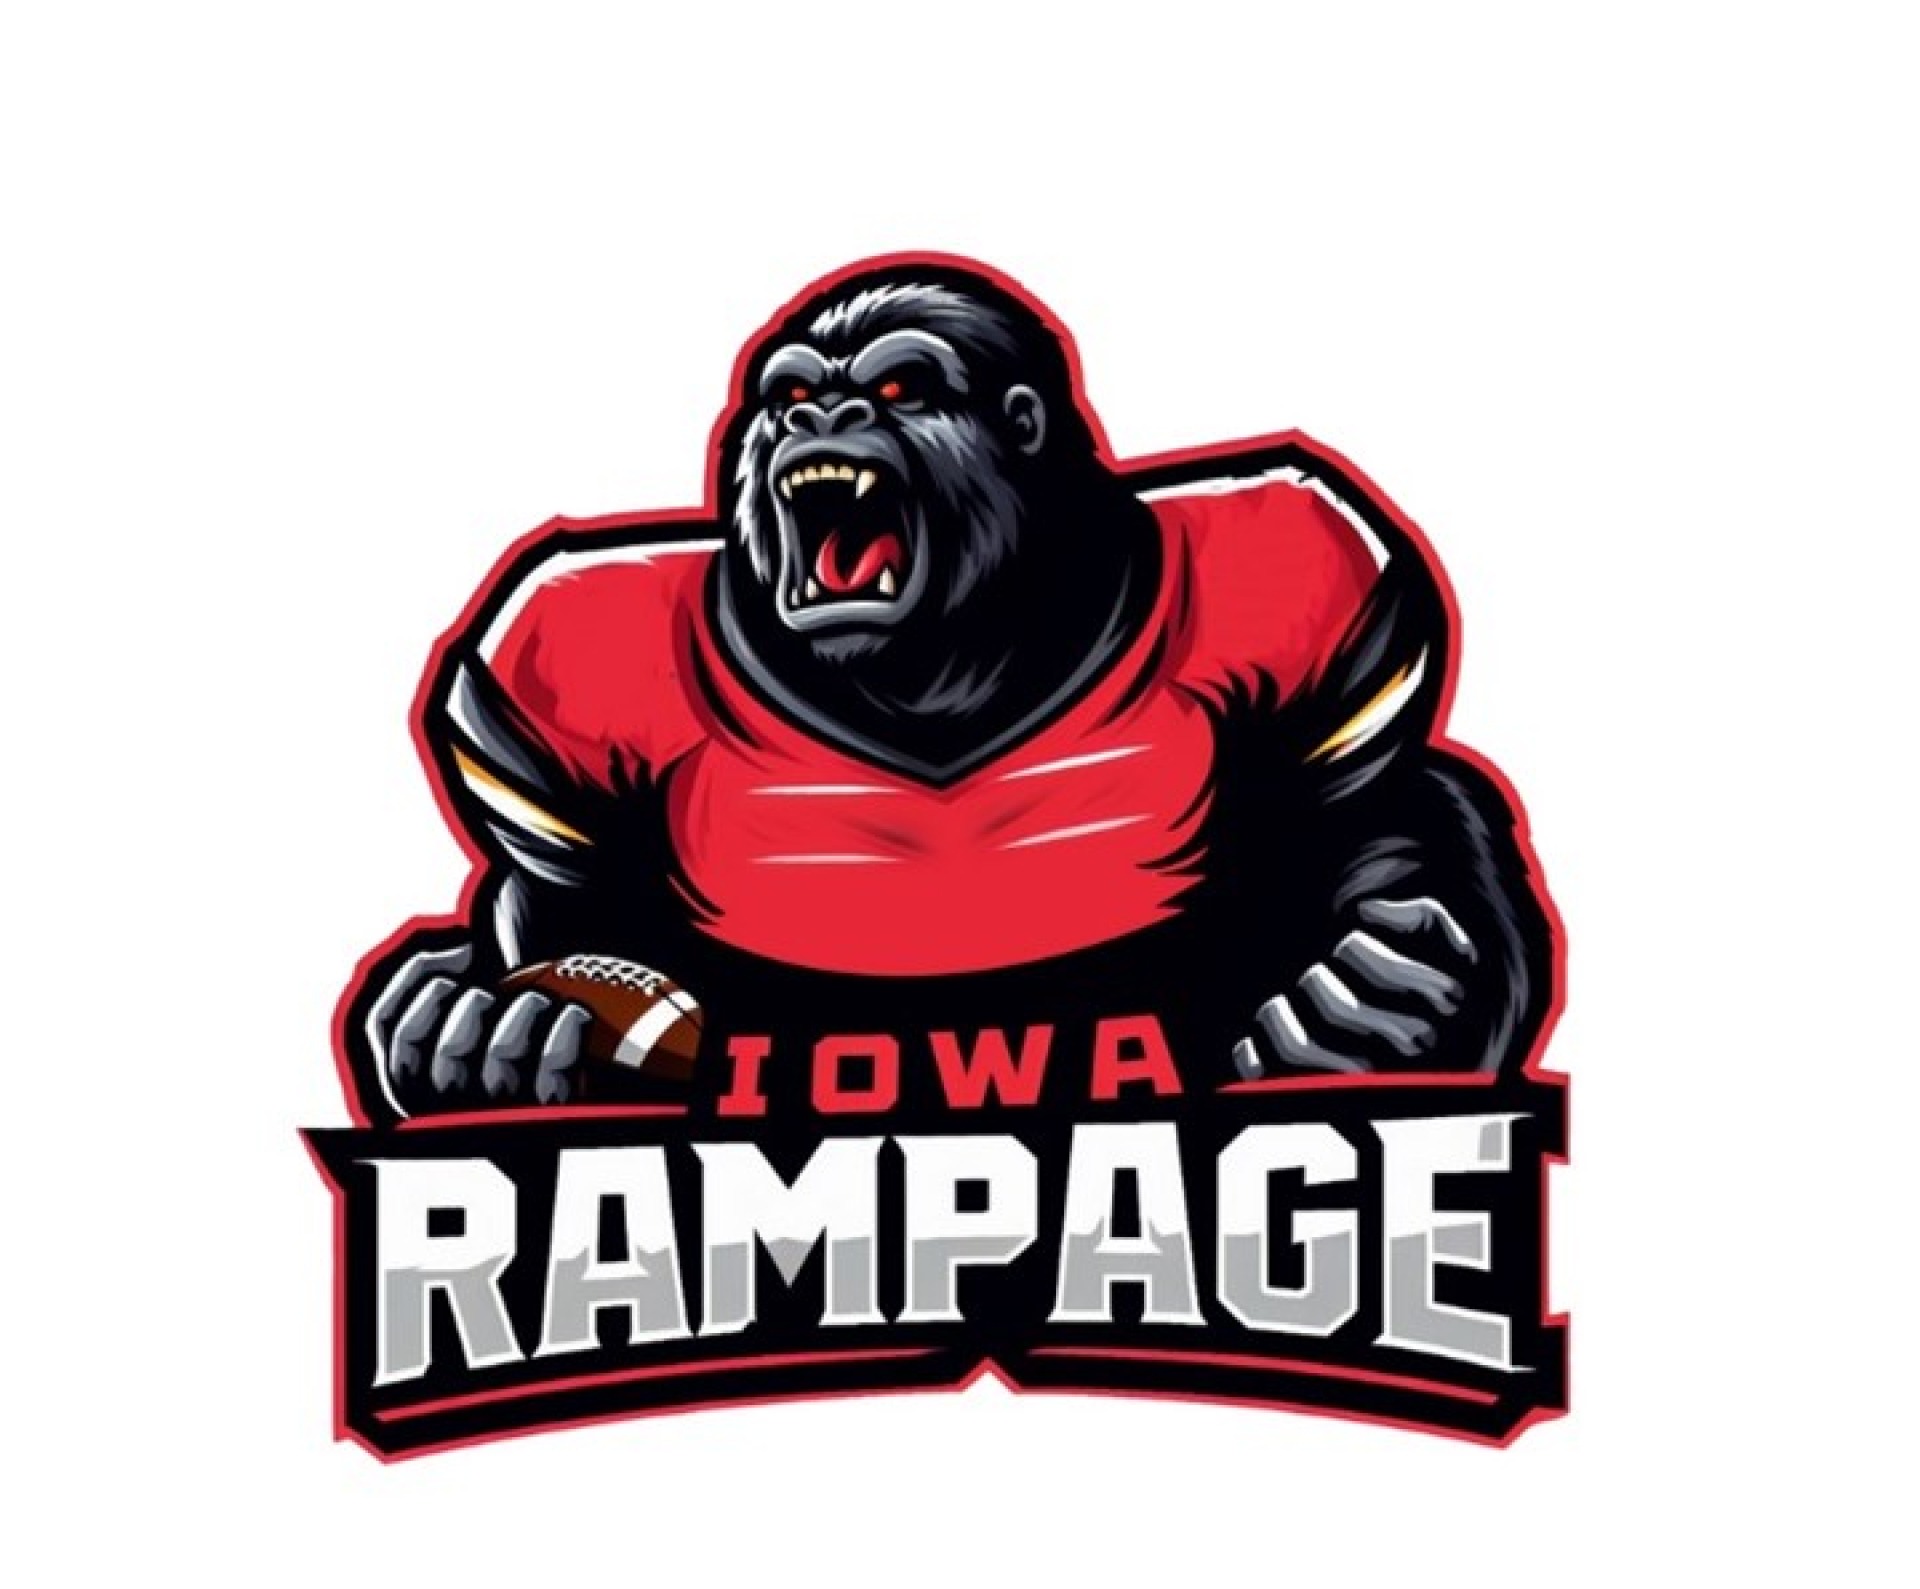 Iowa Rampage logo